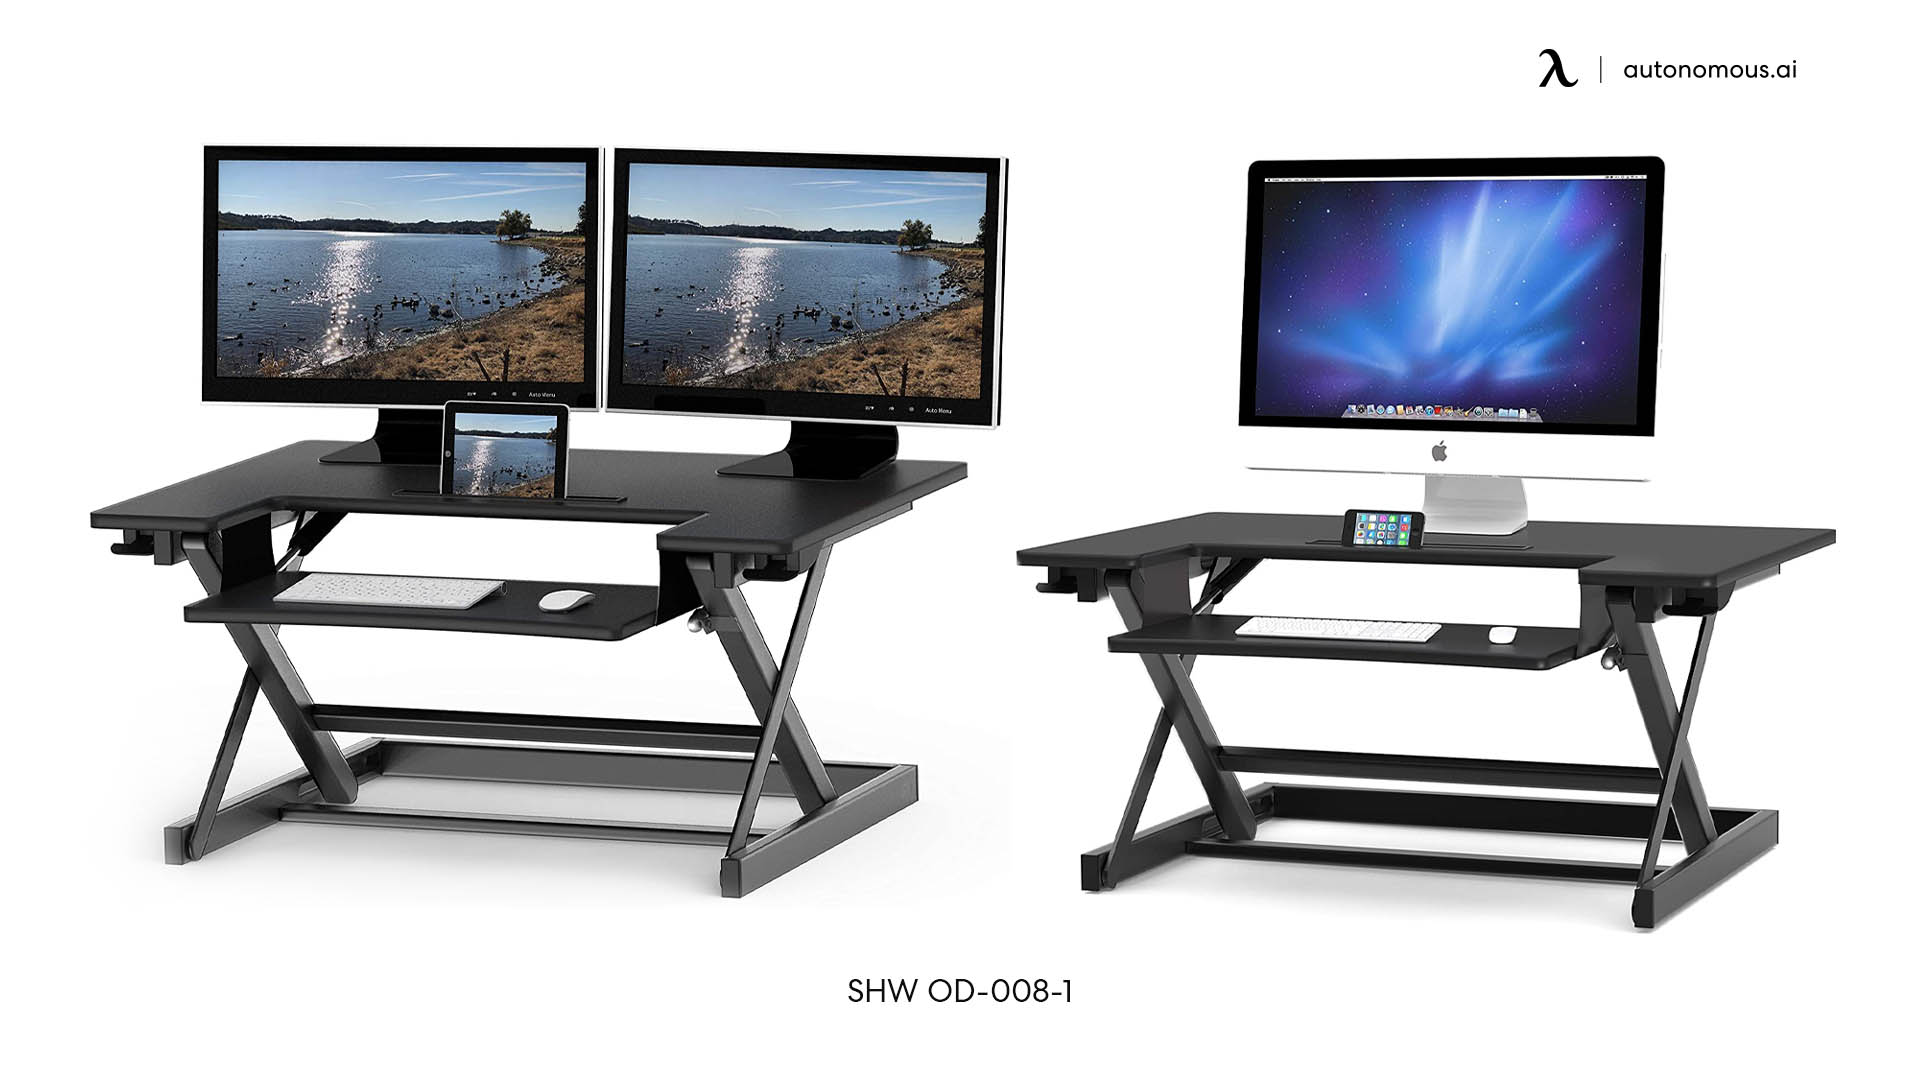 SHW OD-008-1 desk for employee